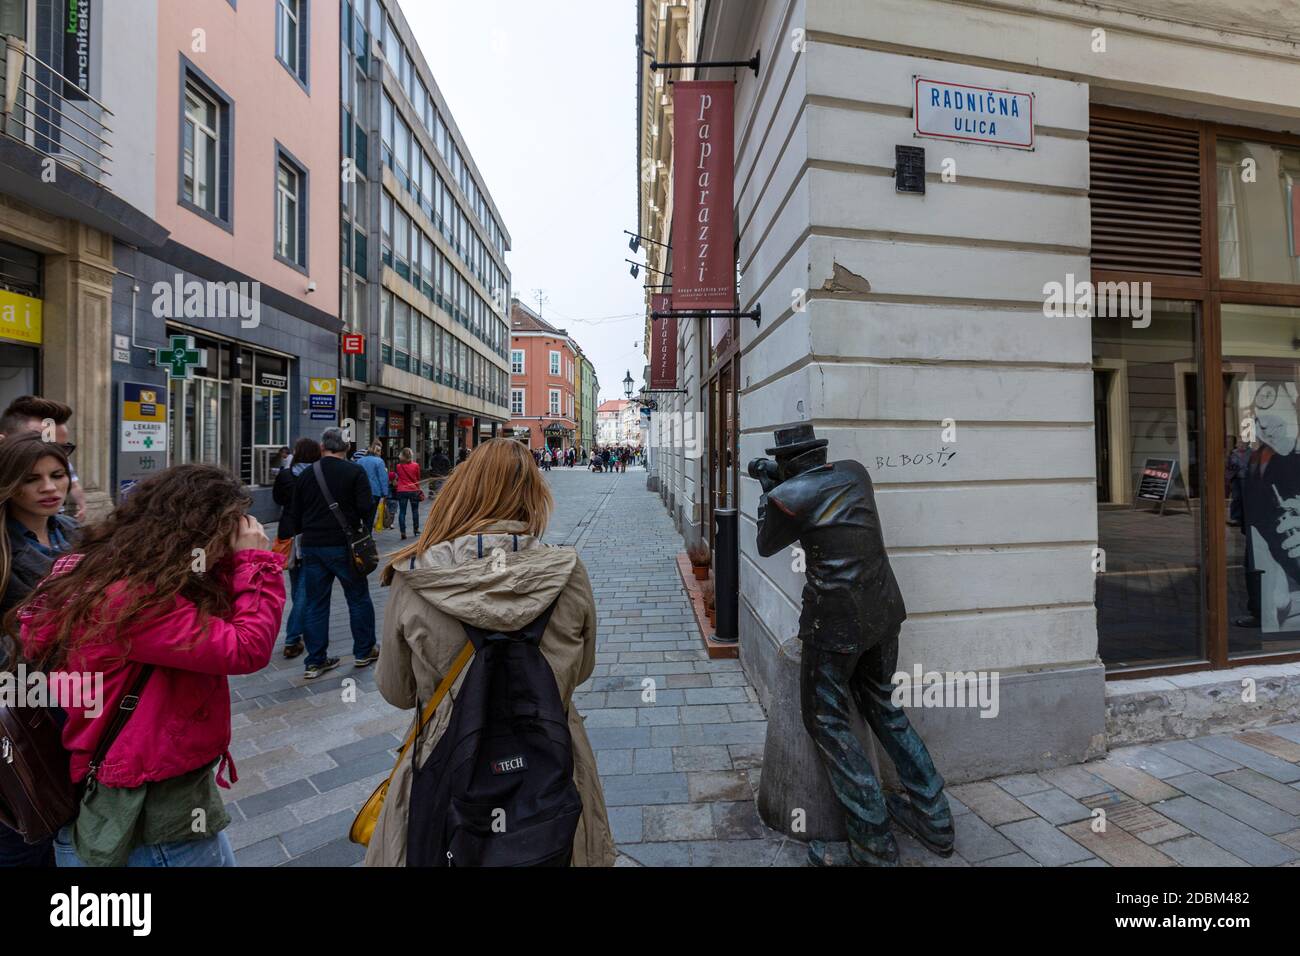 Turistas haciendo fotos a Paparazzi Estatua de un fotógrafo peinando con su cámara a la vuelta de la esquina de Radničná, Ciudad Vieja, Bratislava, Eslovaquia Foto de stock